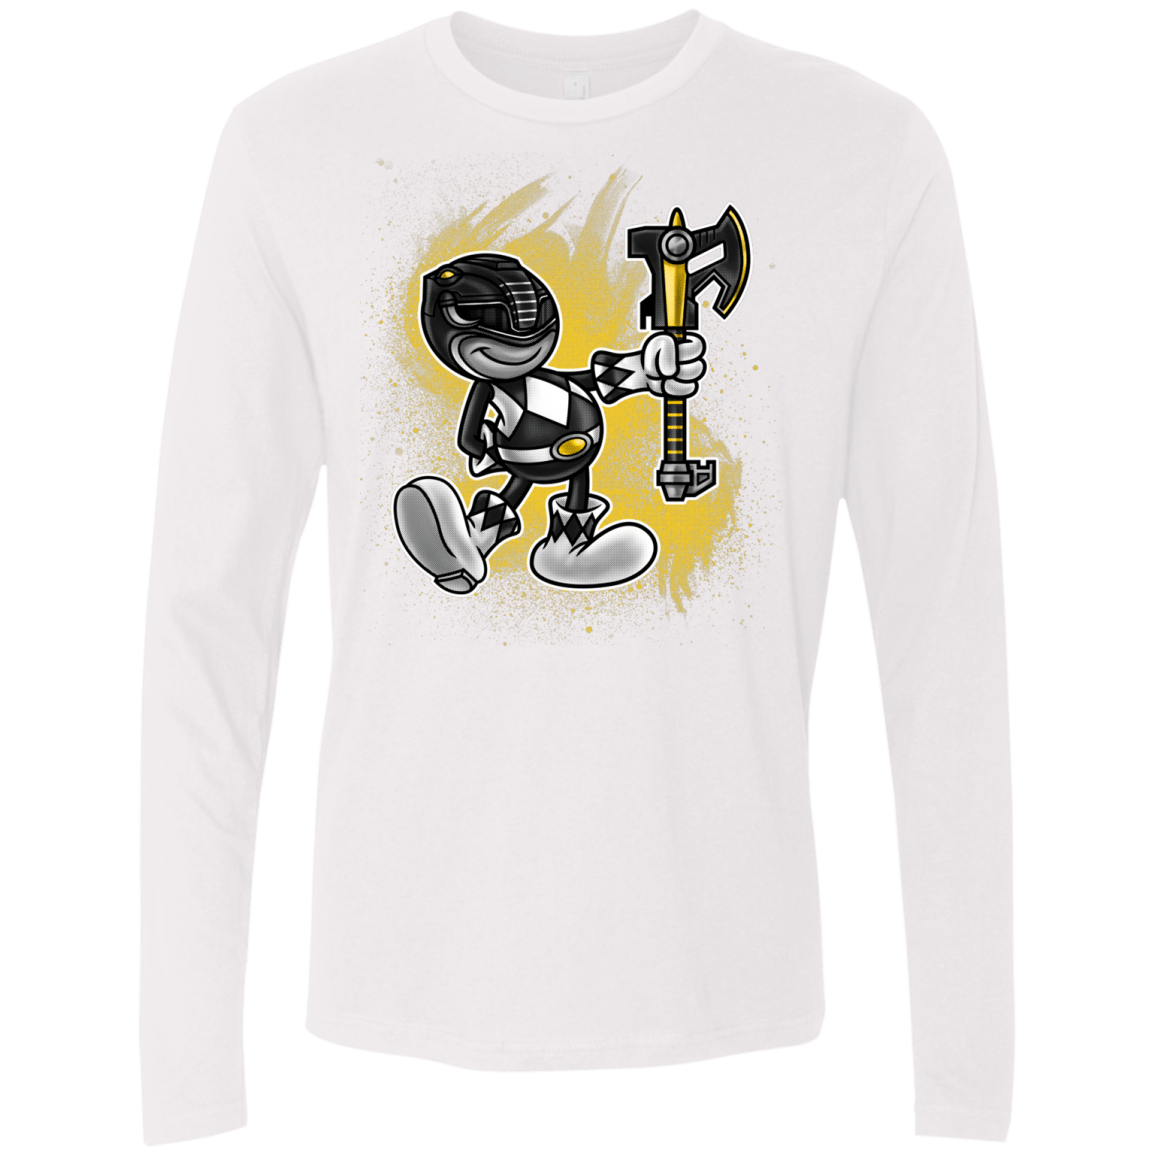 T-Shirts White / Small Black Ranger Artwork Men's Premium Long Sleeve